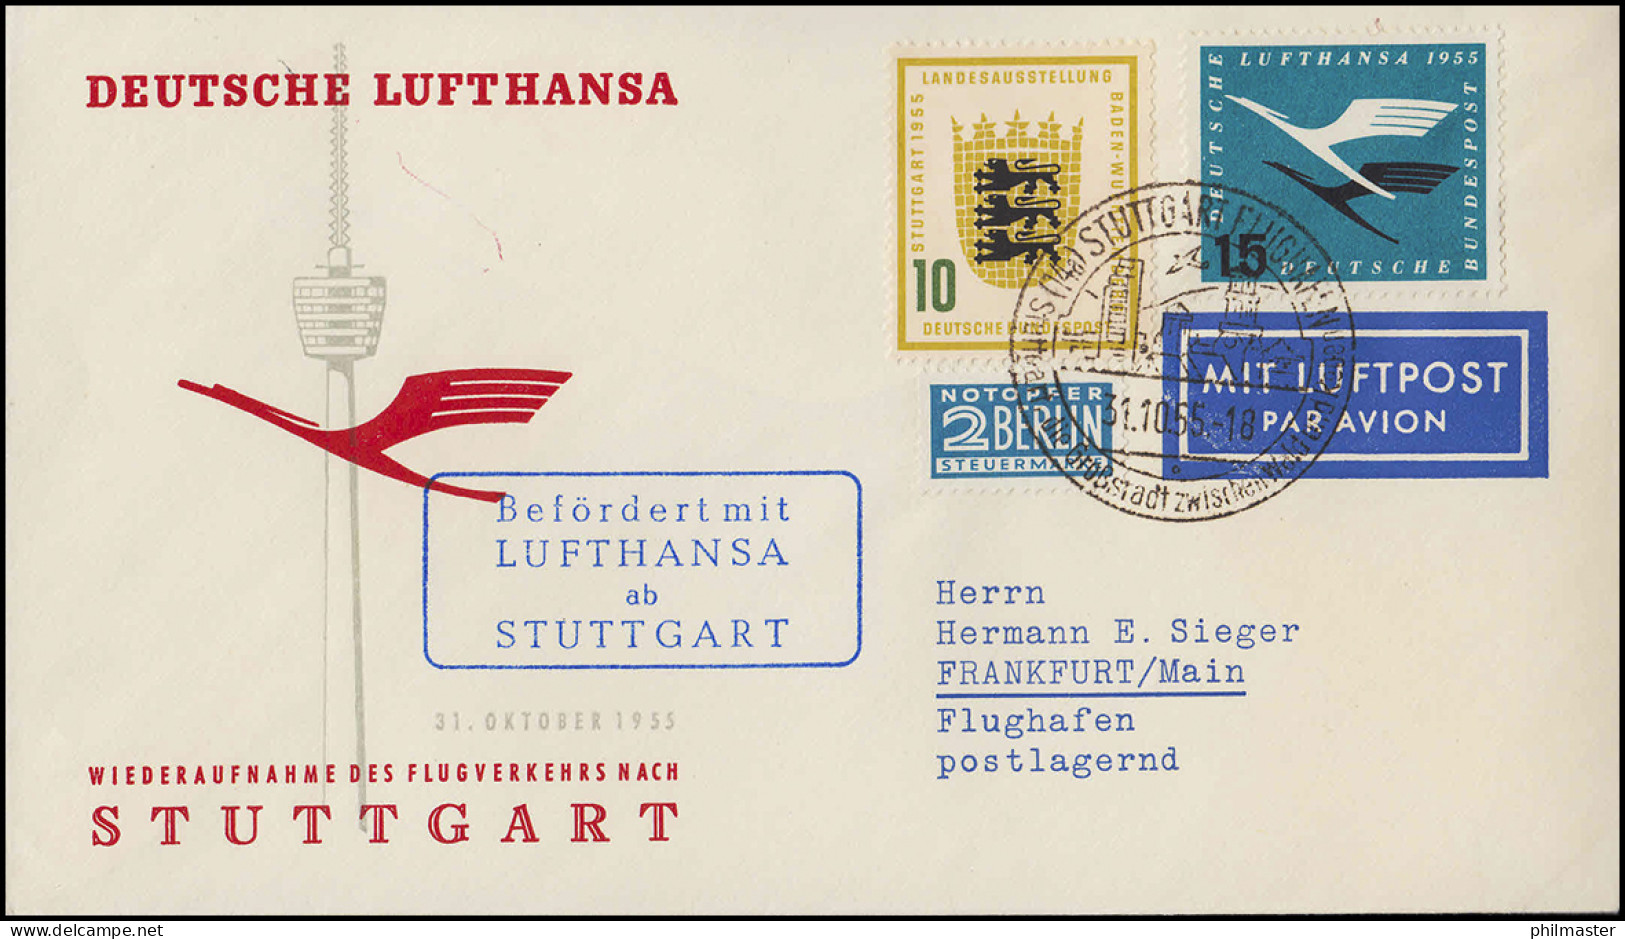 Luftpost Lufthansa Wiederaufnahme Inland Flugverkehr Nach Stuttgart, 31.10.1955 - Erst- U. Sonderflugbriefe